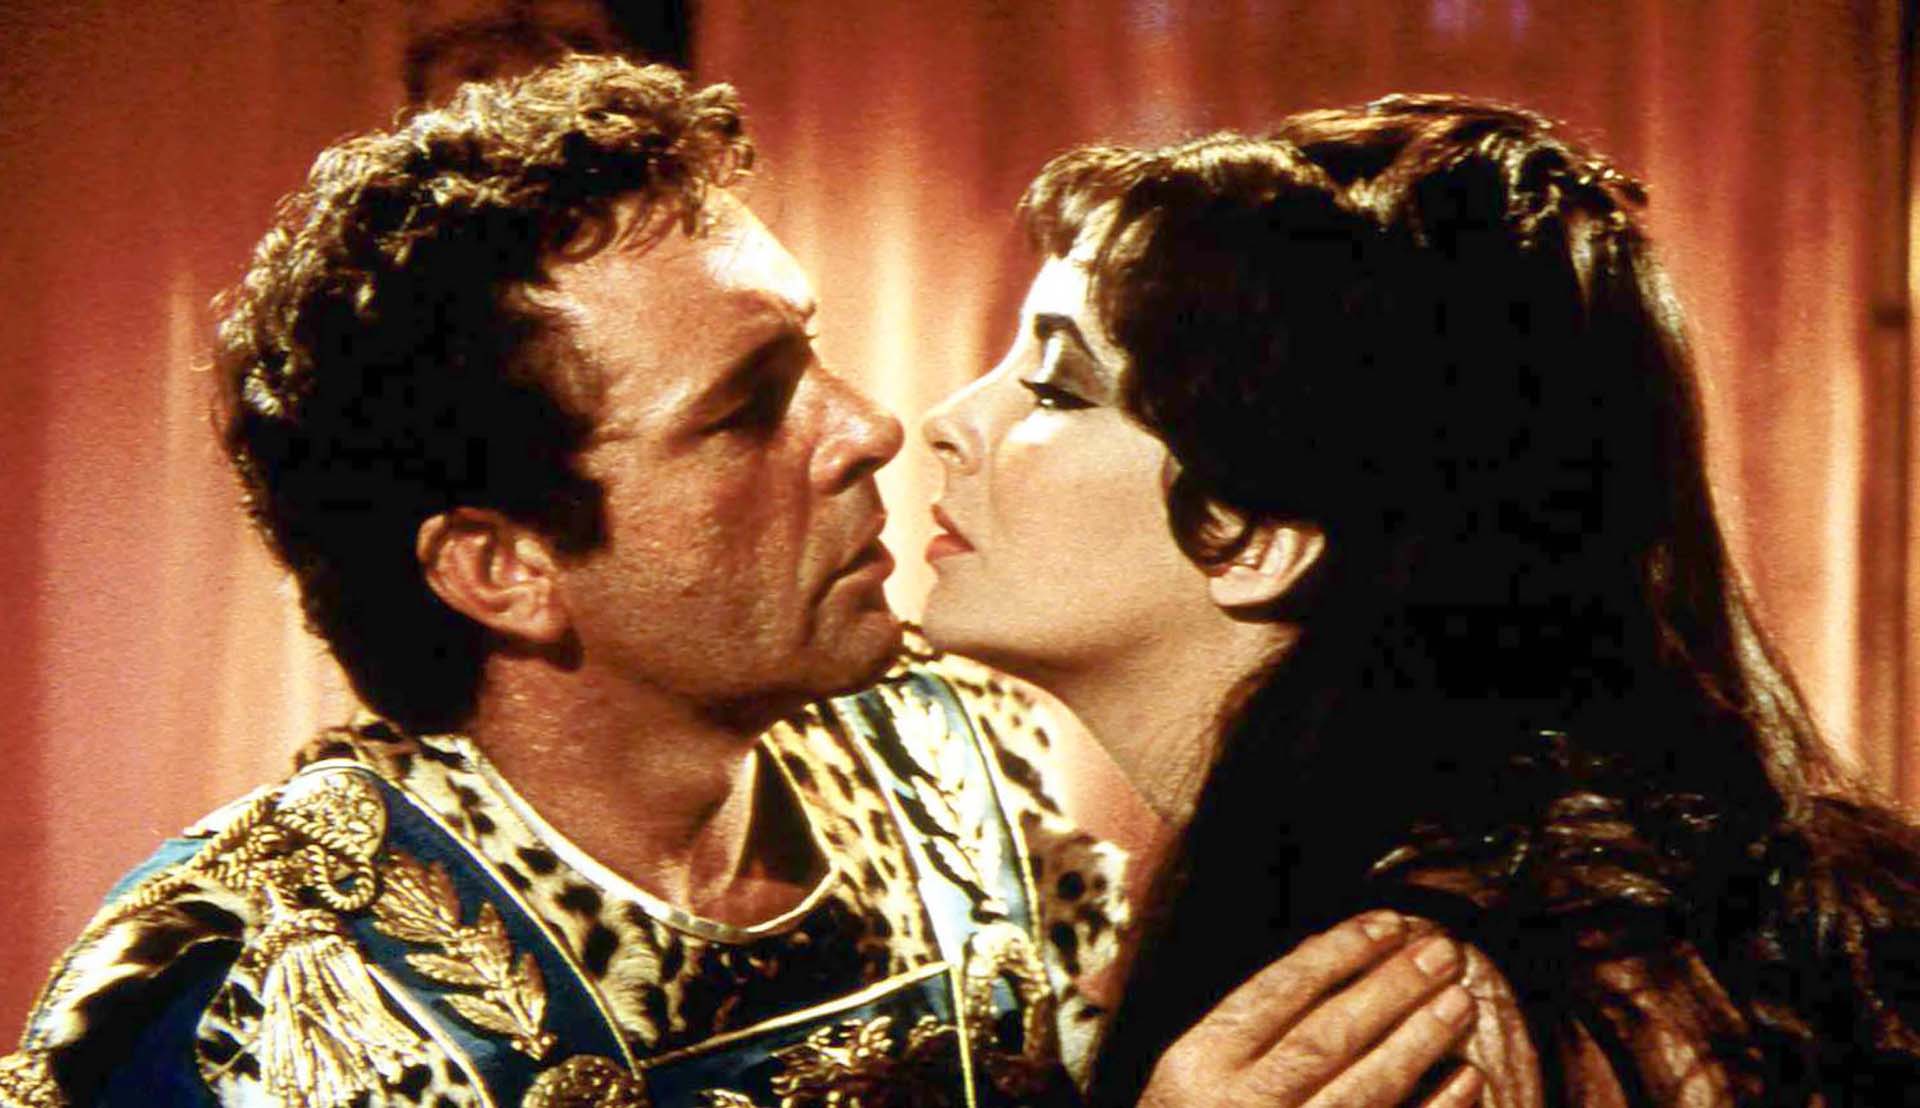 Escena de Cleopatra (1962) el filme que se convirtió en un clásico y a la postre en un matrimonio polémico. (Foto: Shutterstock)